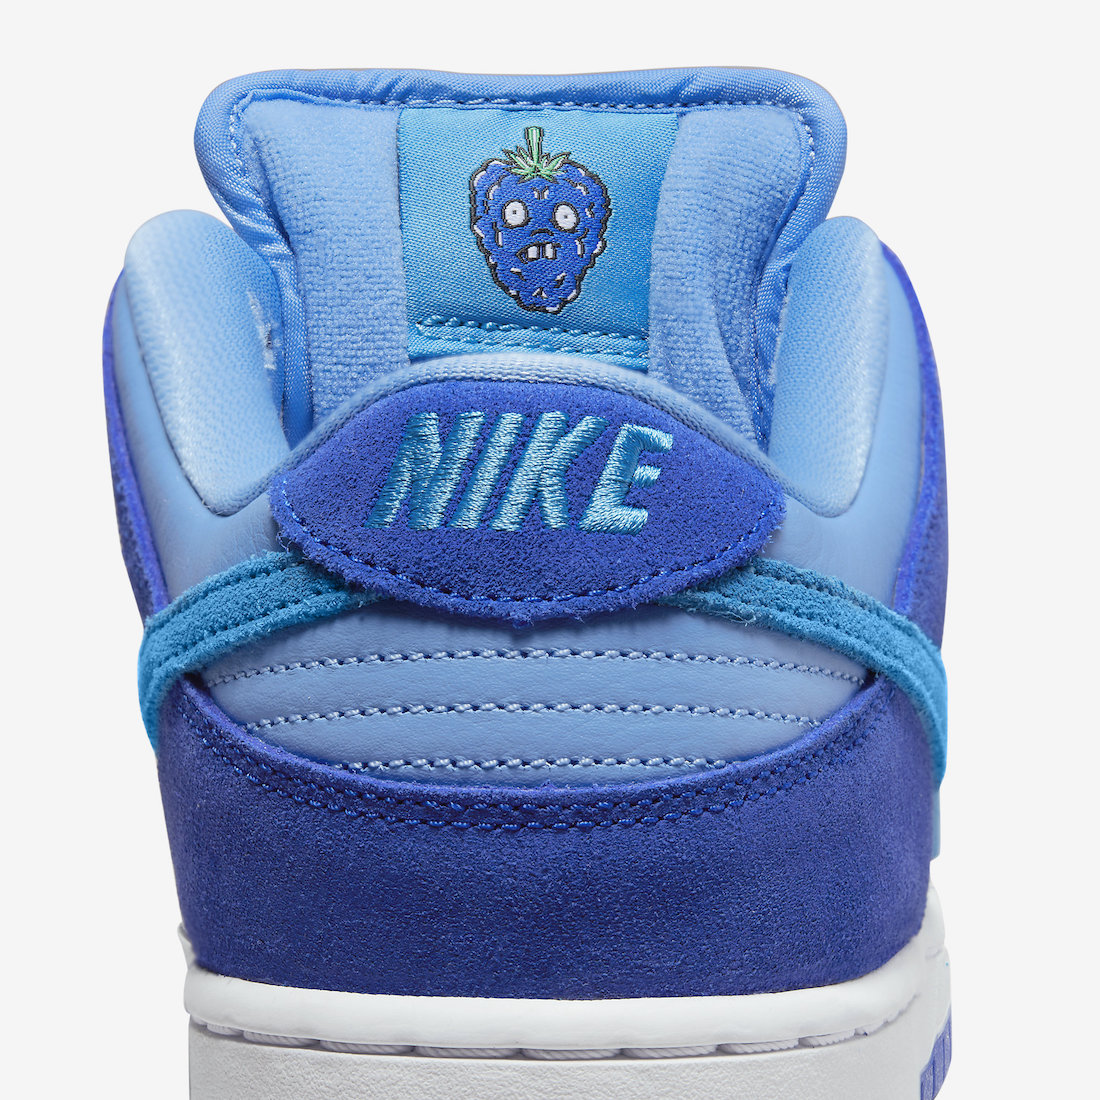 Nike SB Dunk Low Blue Raspberry DM0807-400 Release Date | SBD